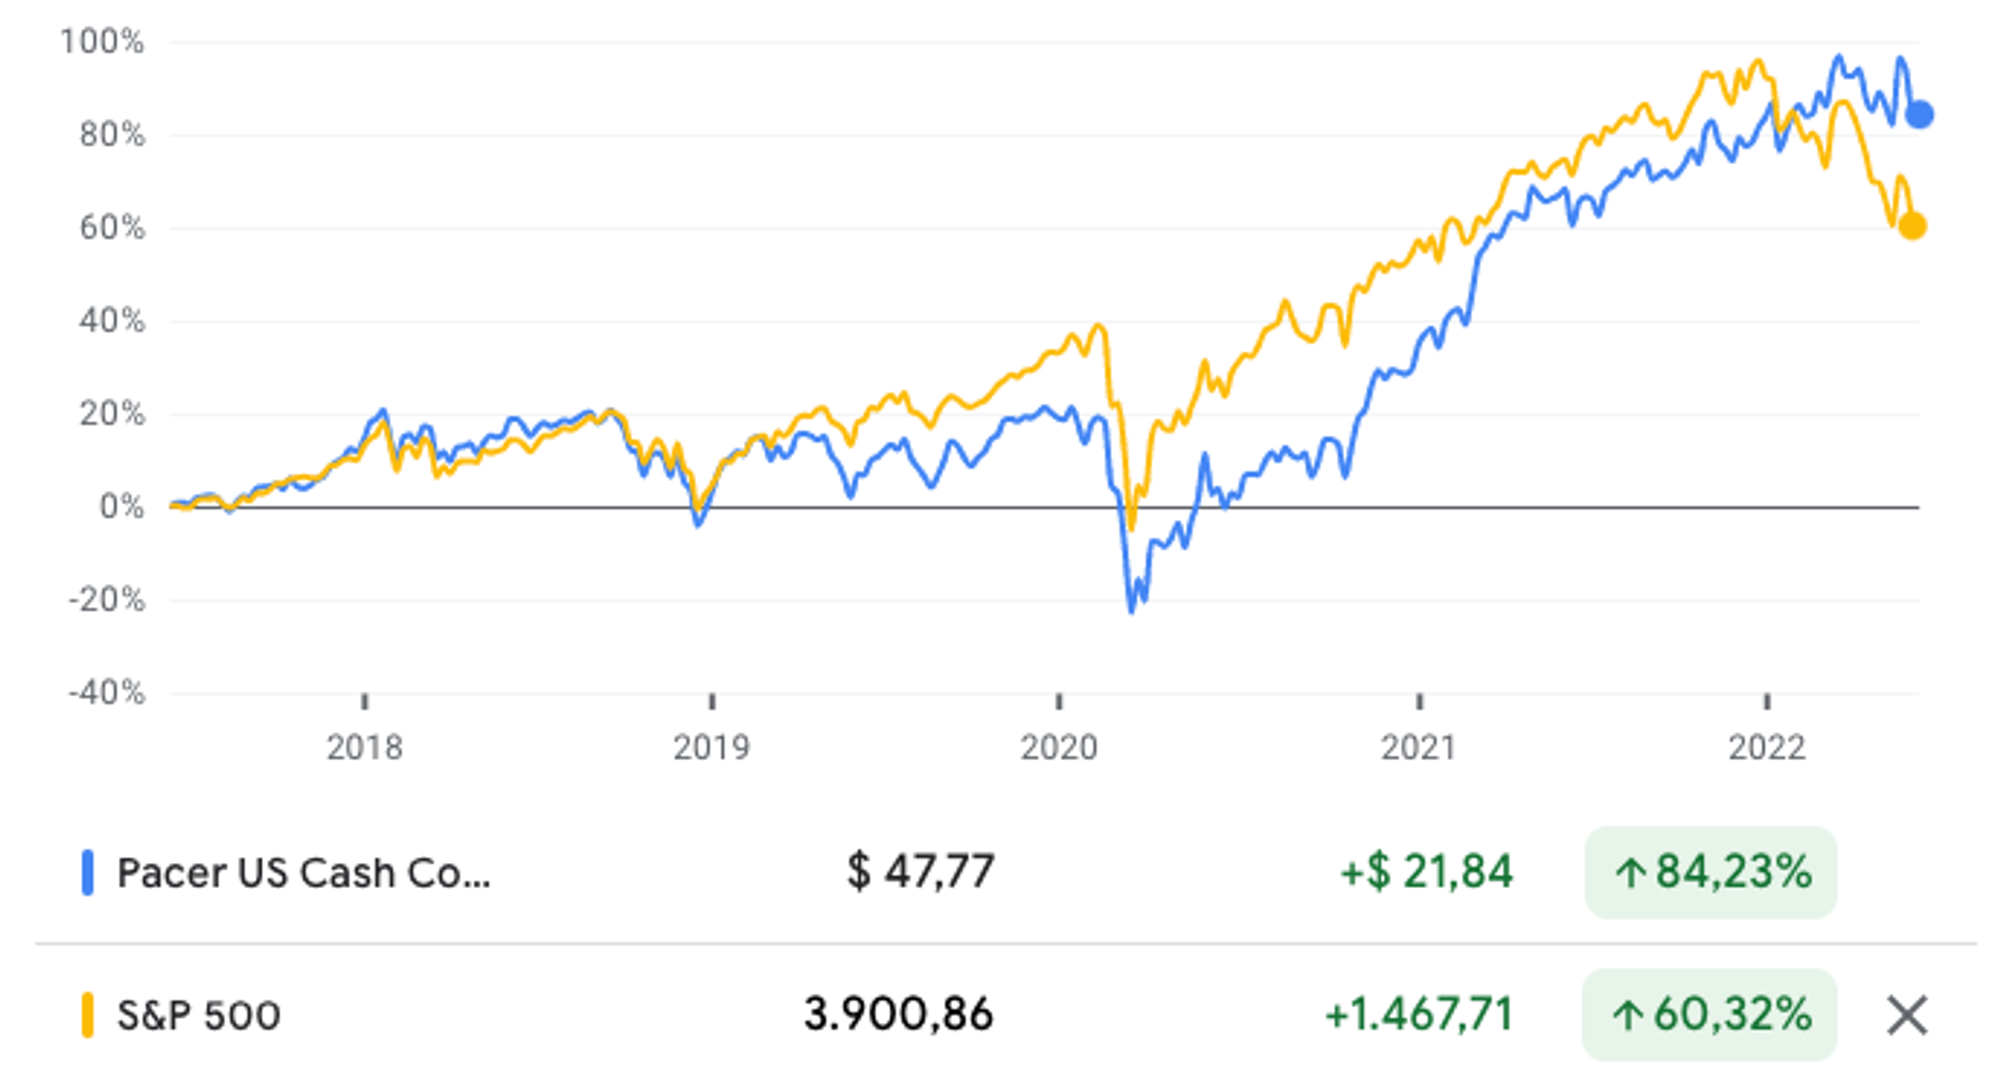 Rendementsvergelijking S&P 500 en Cash Cows ETF over een periode van 5 jaar via Google Finance.